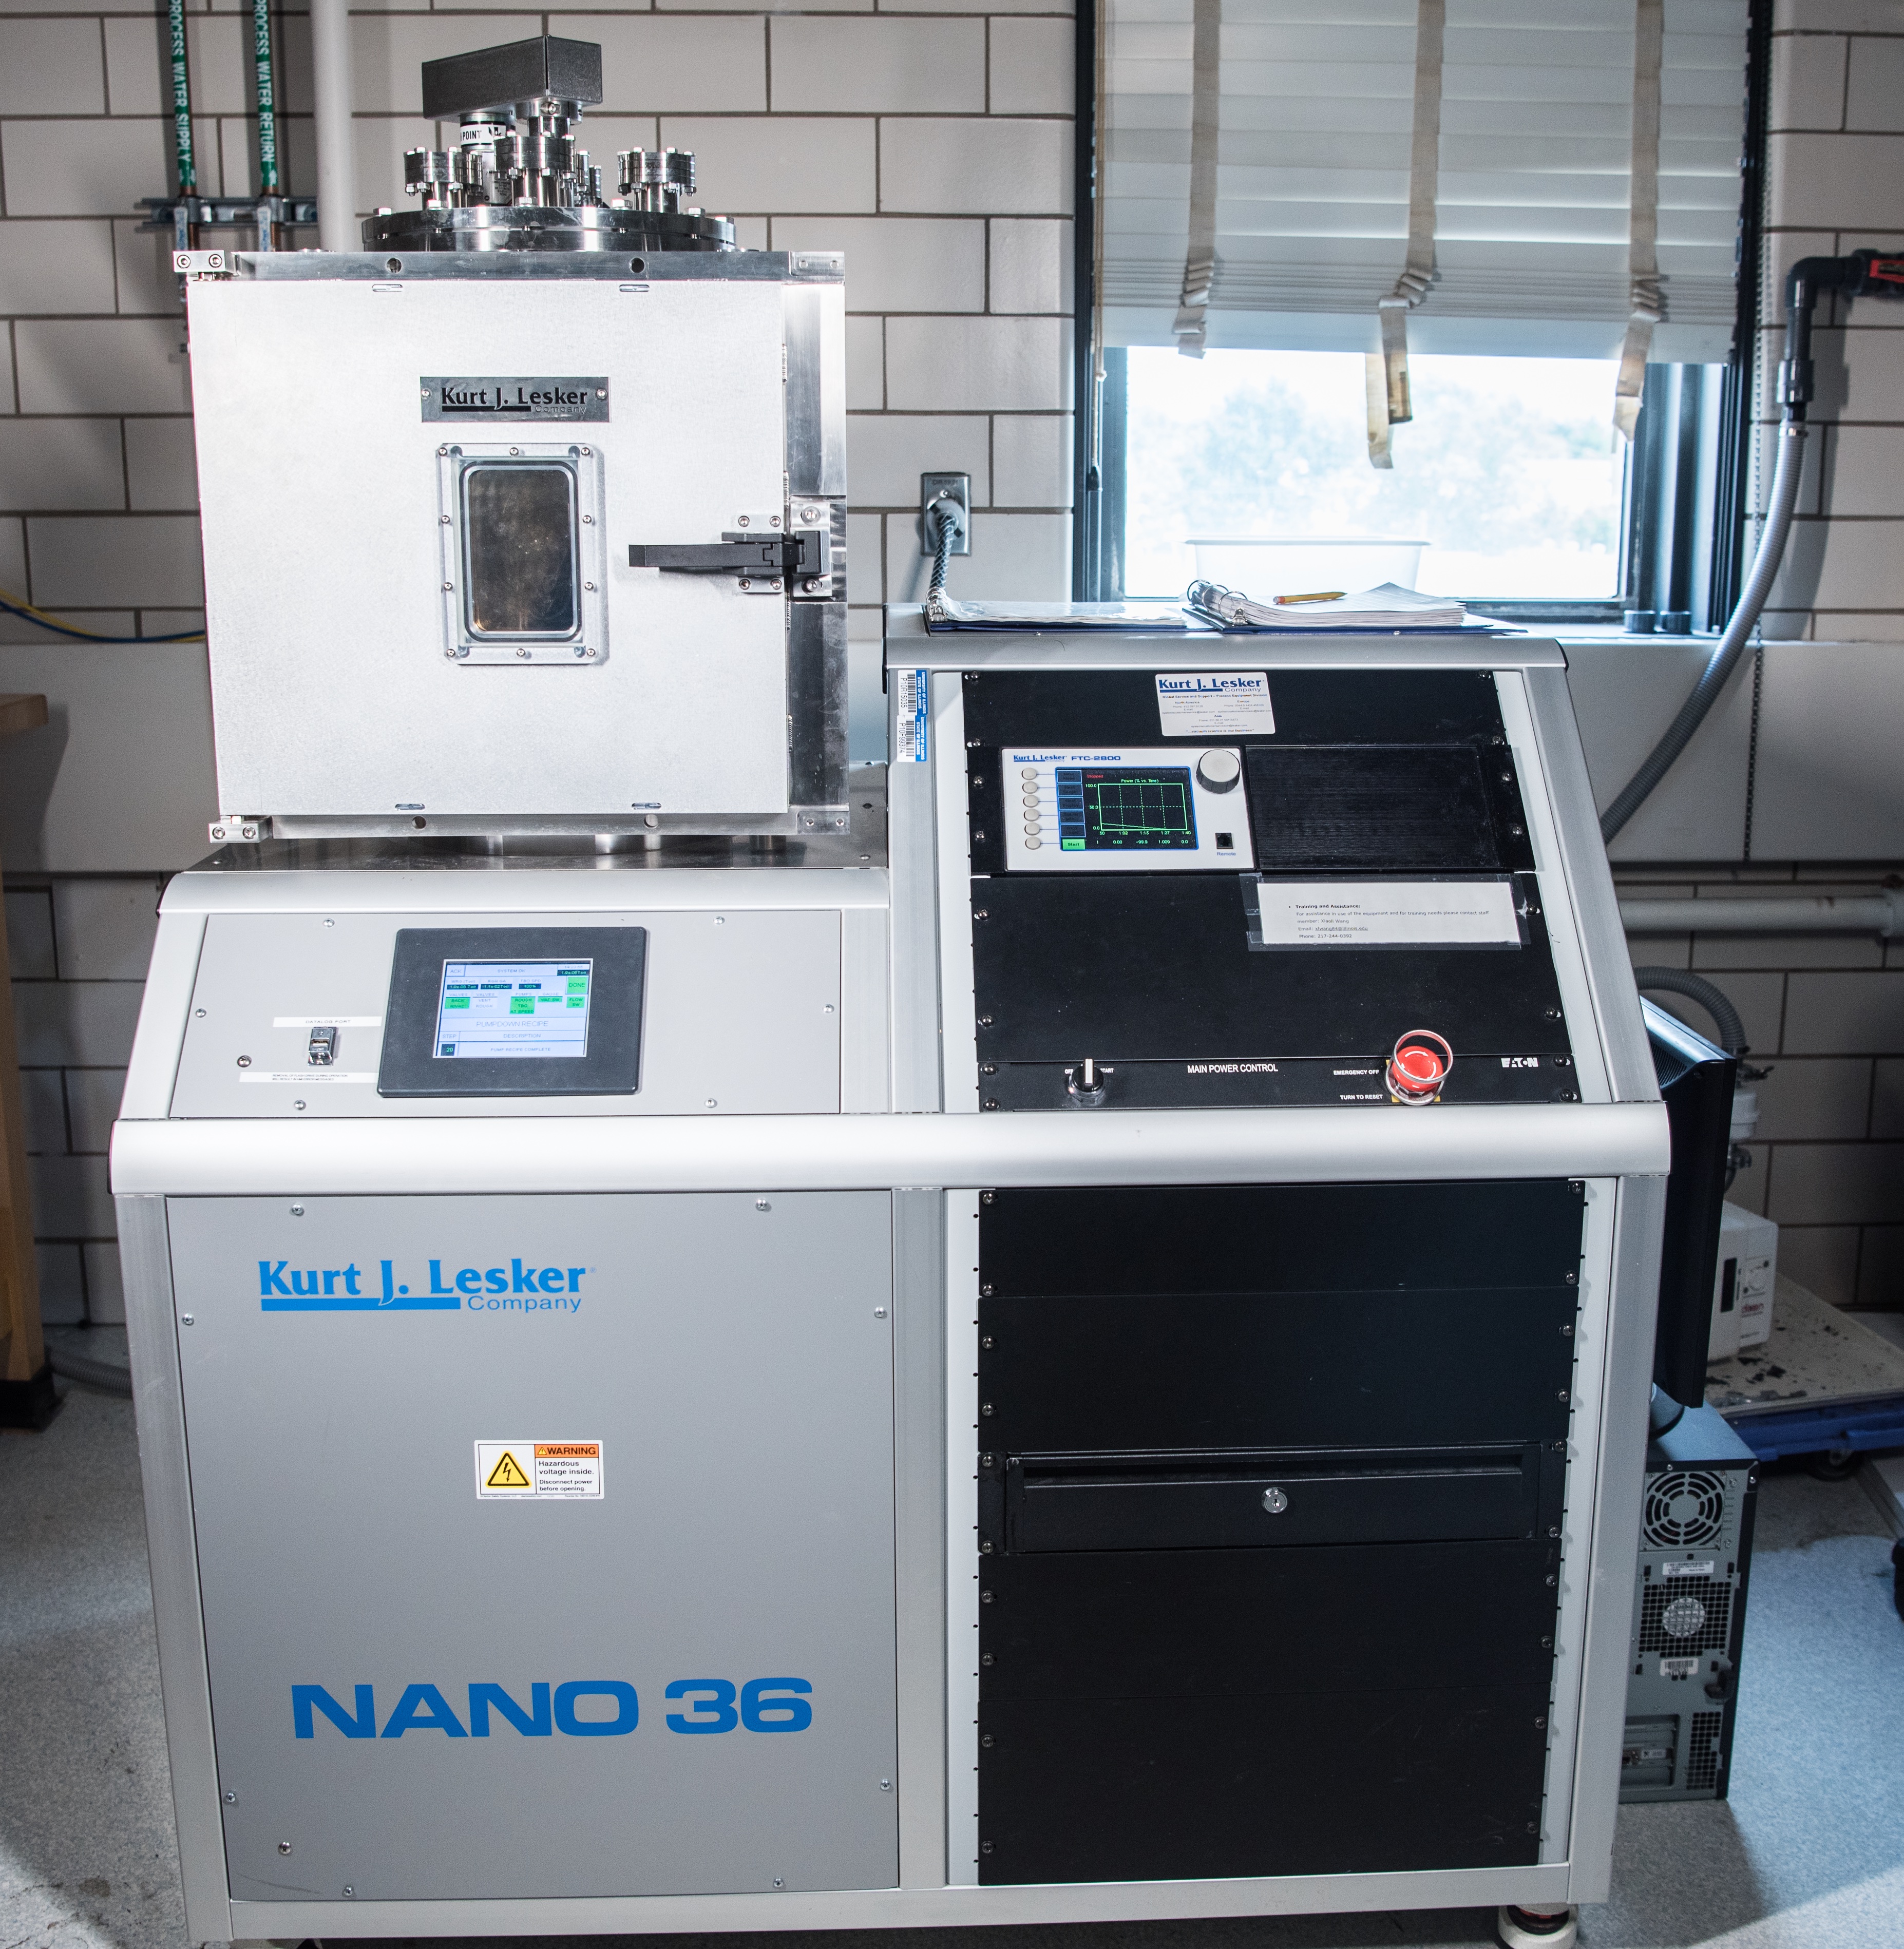 Kurt J. Lesker Nano36 Thermal Evaporator System